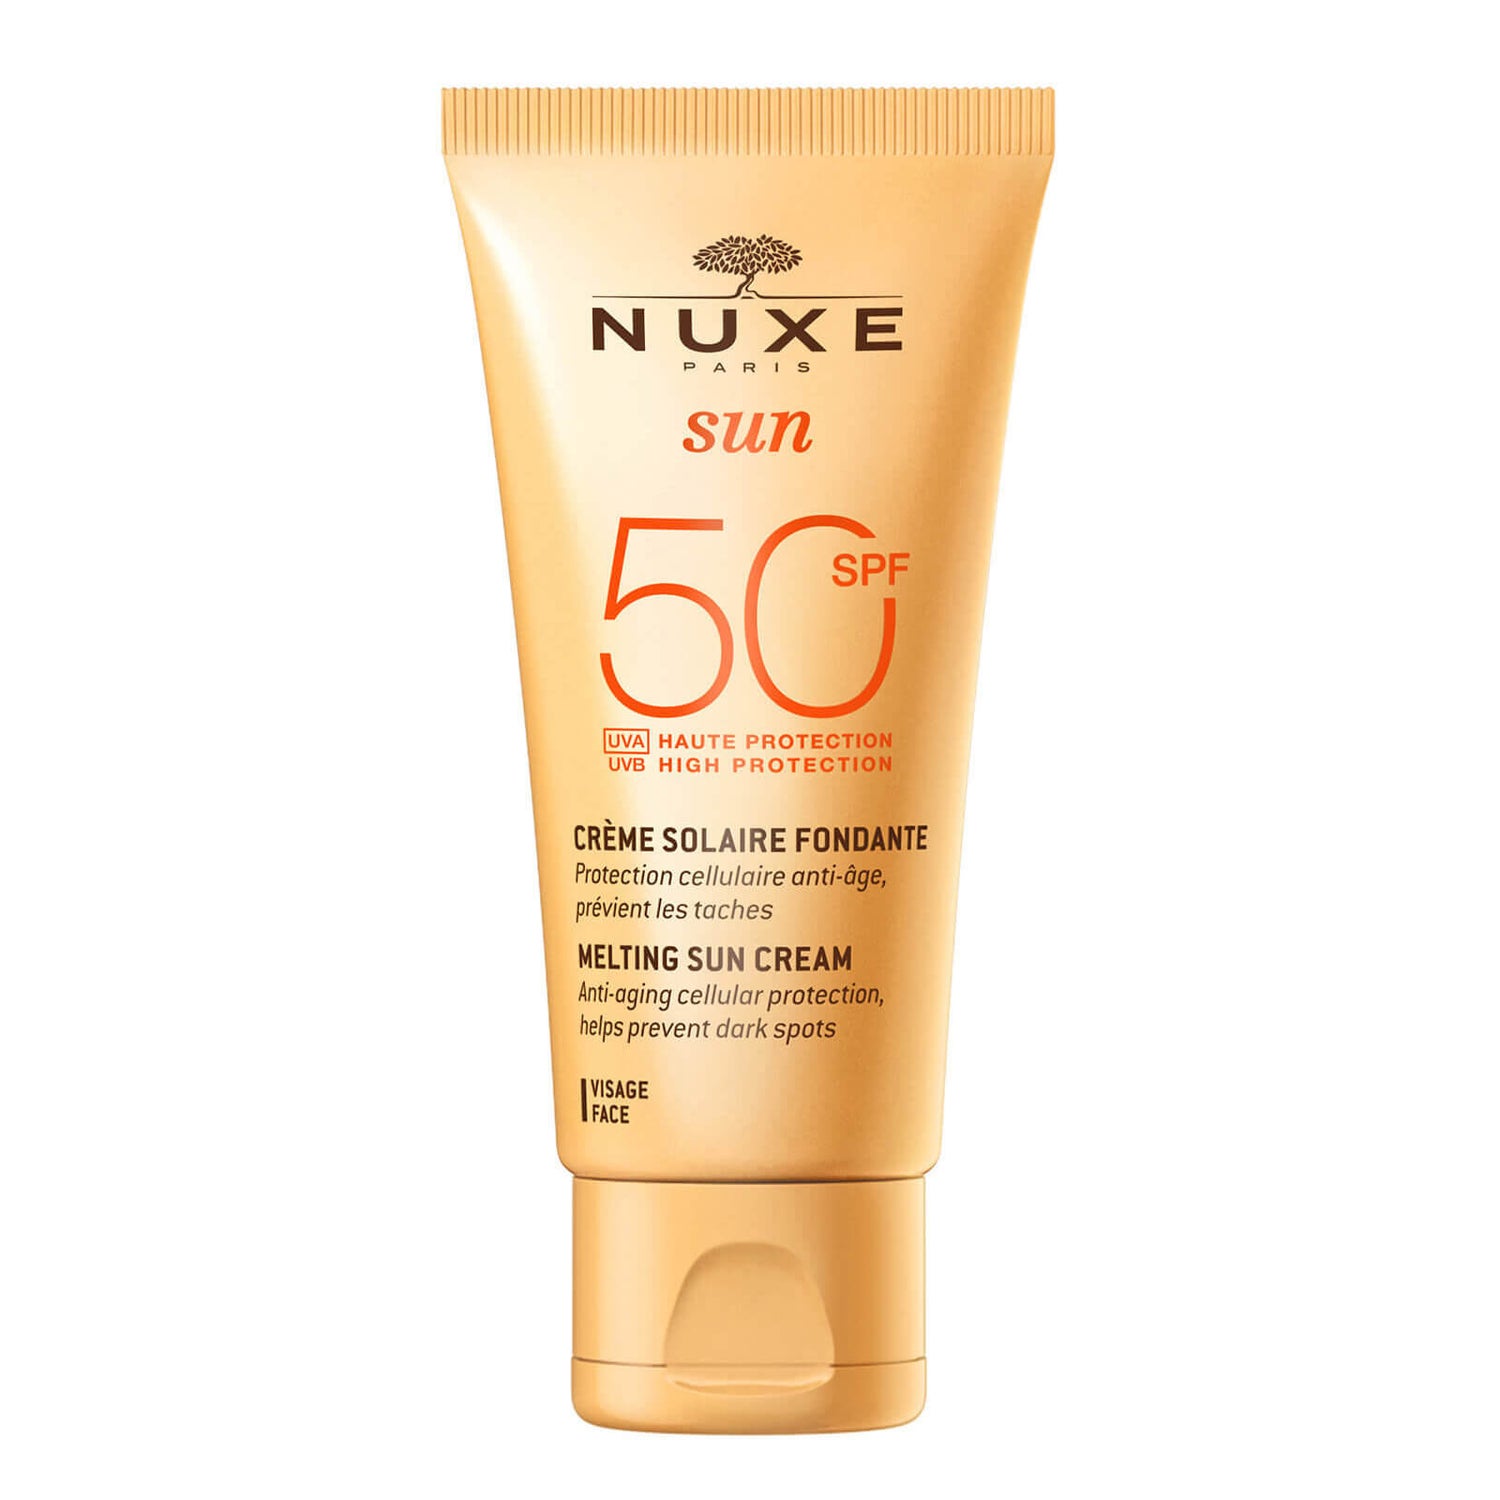 NUXE Sun High Protection Fondant Cream for Face SPF 50 (50 ml)